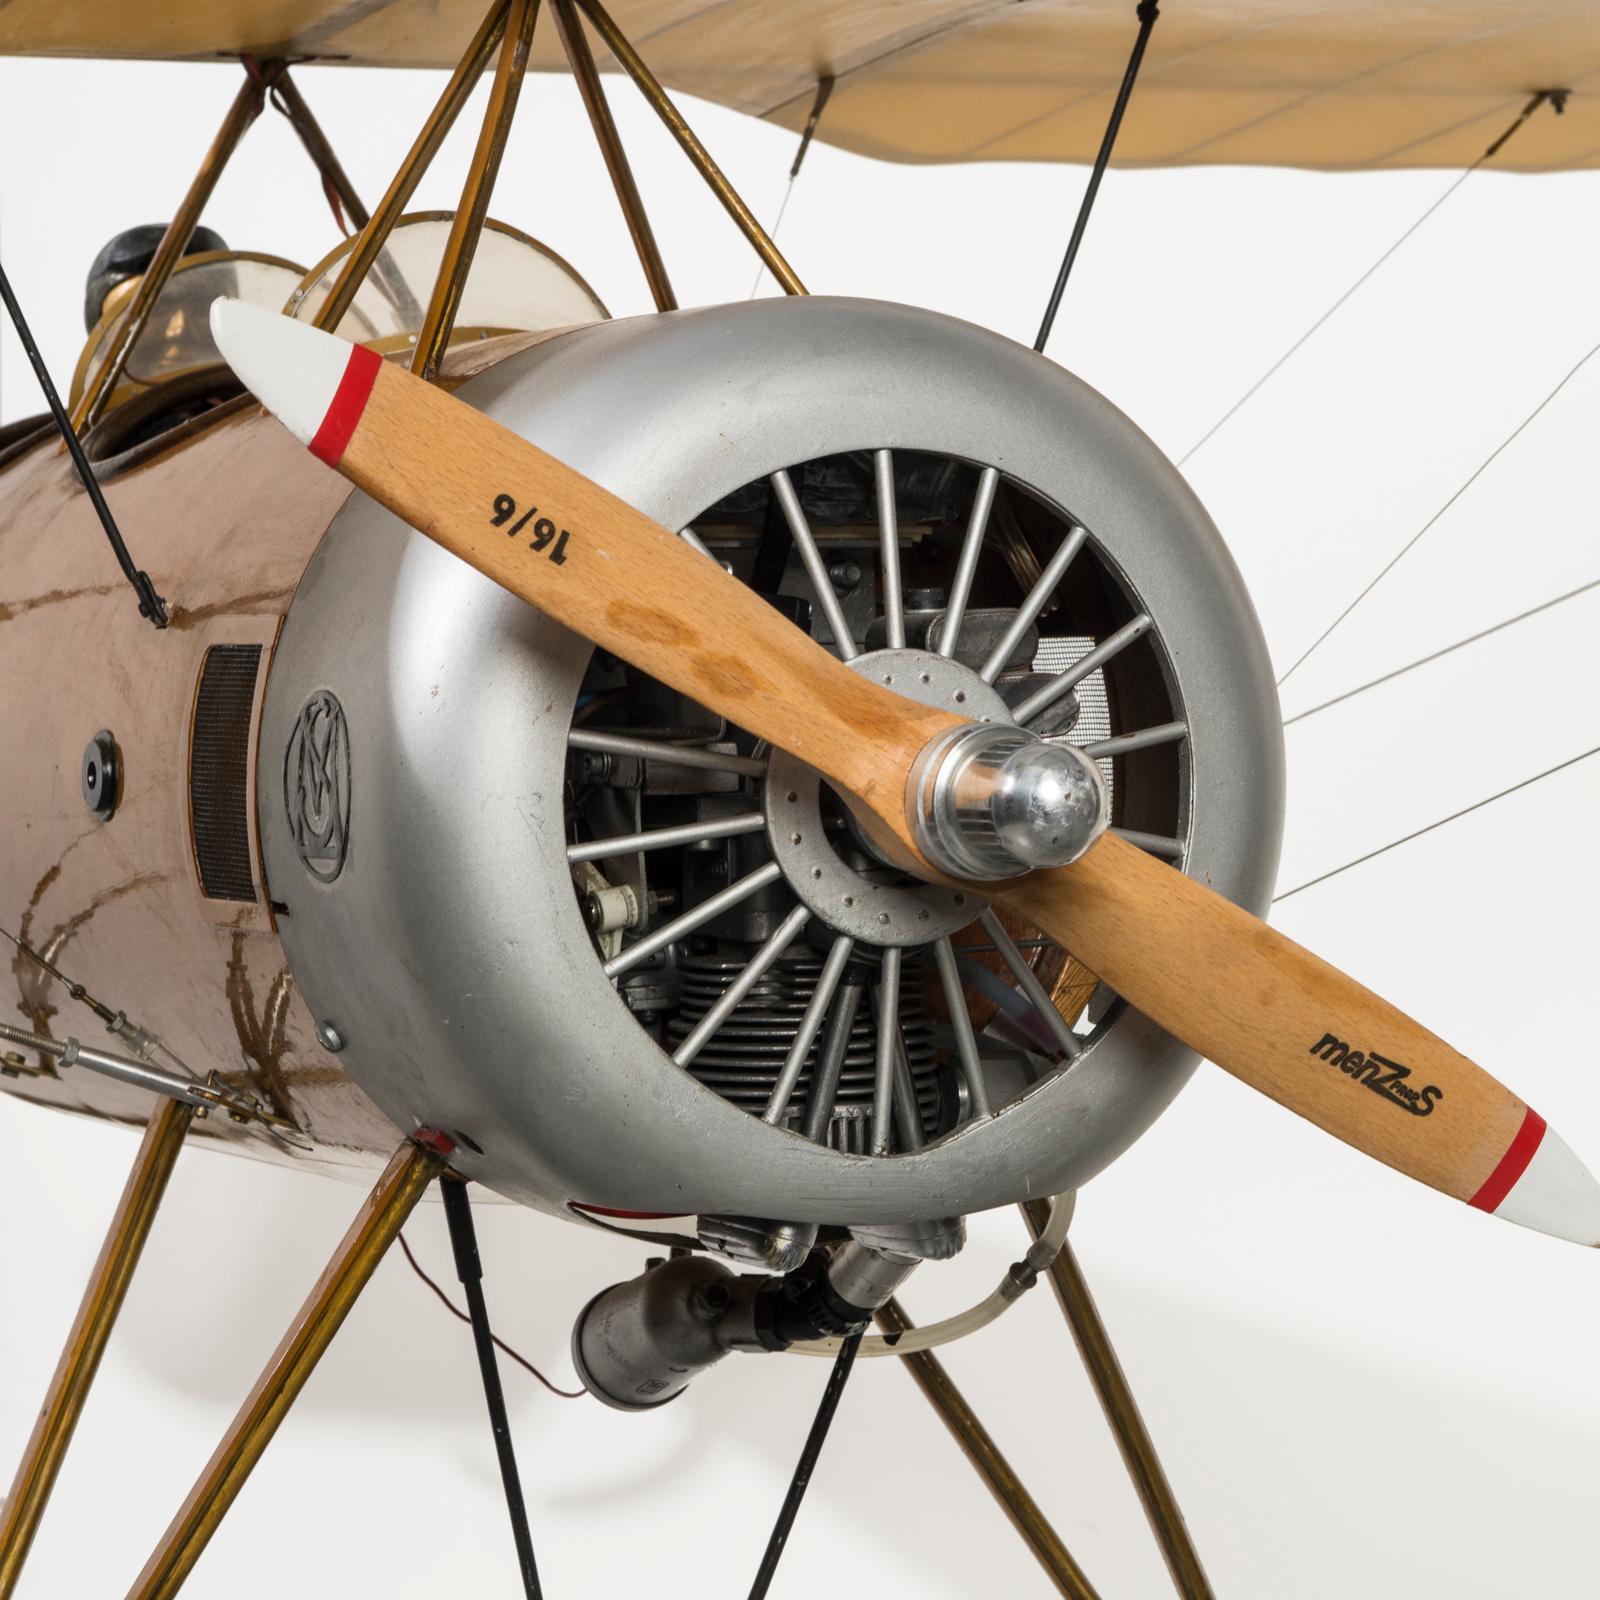 Großartiges Flugzeugmodell aus der Zeit des Ersten Weltkriegs mit funktionstüchtigem Motor. Fangen Sie die Essenz der Luftfahrtgeschichte und der Handwerkskunst mit diesem atemberaubenden, handgefertigten Flugzeugmodell ein!

Dieses Modell wurde in